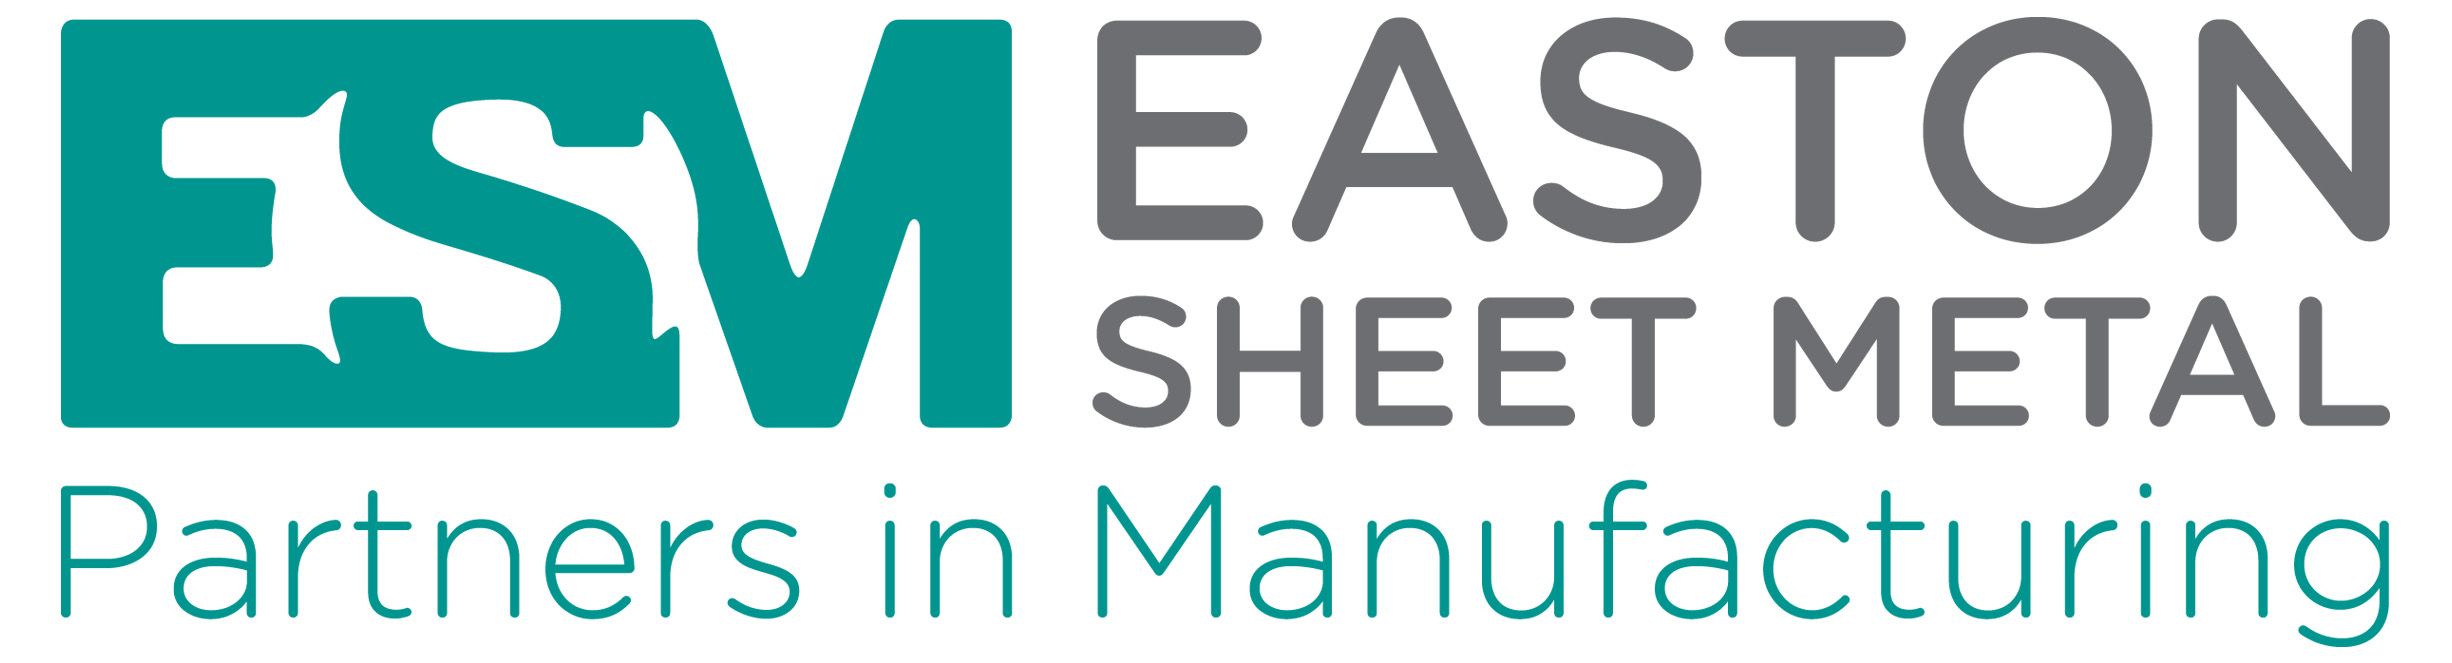 Easton Sheet Metal Ltd